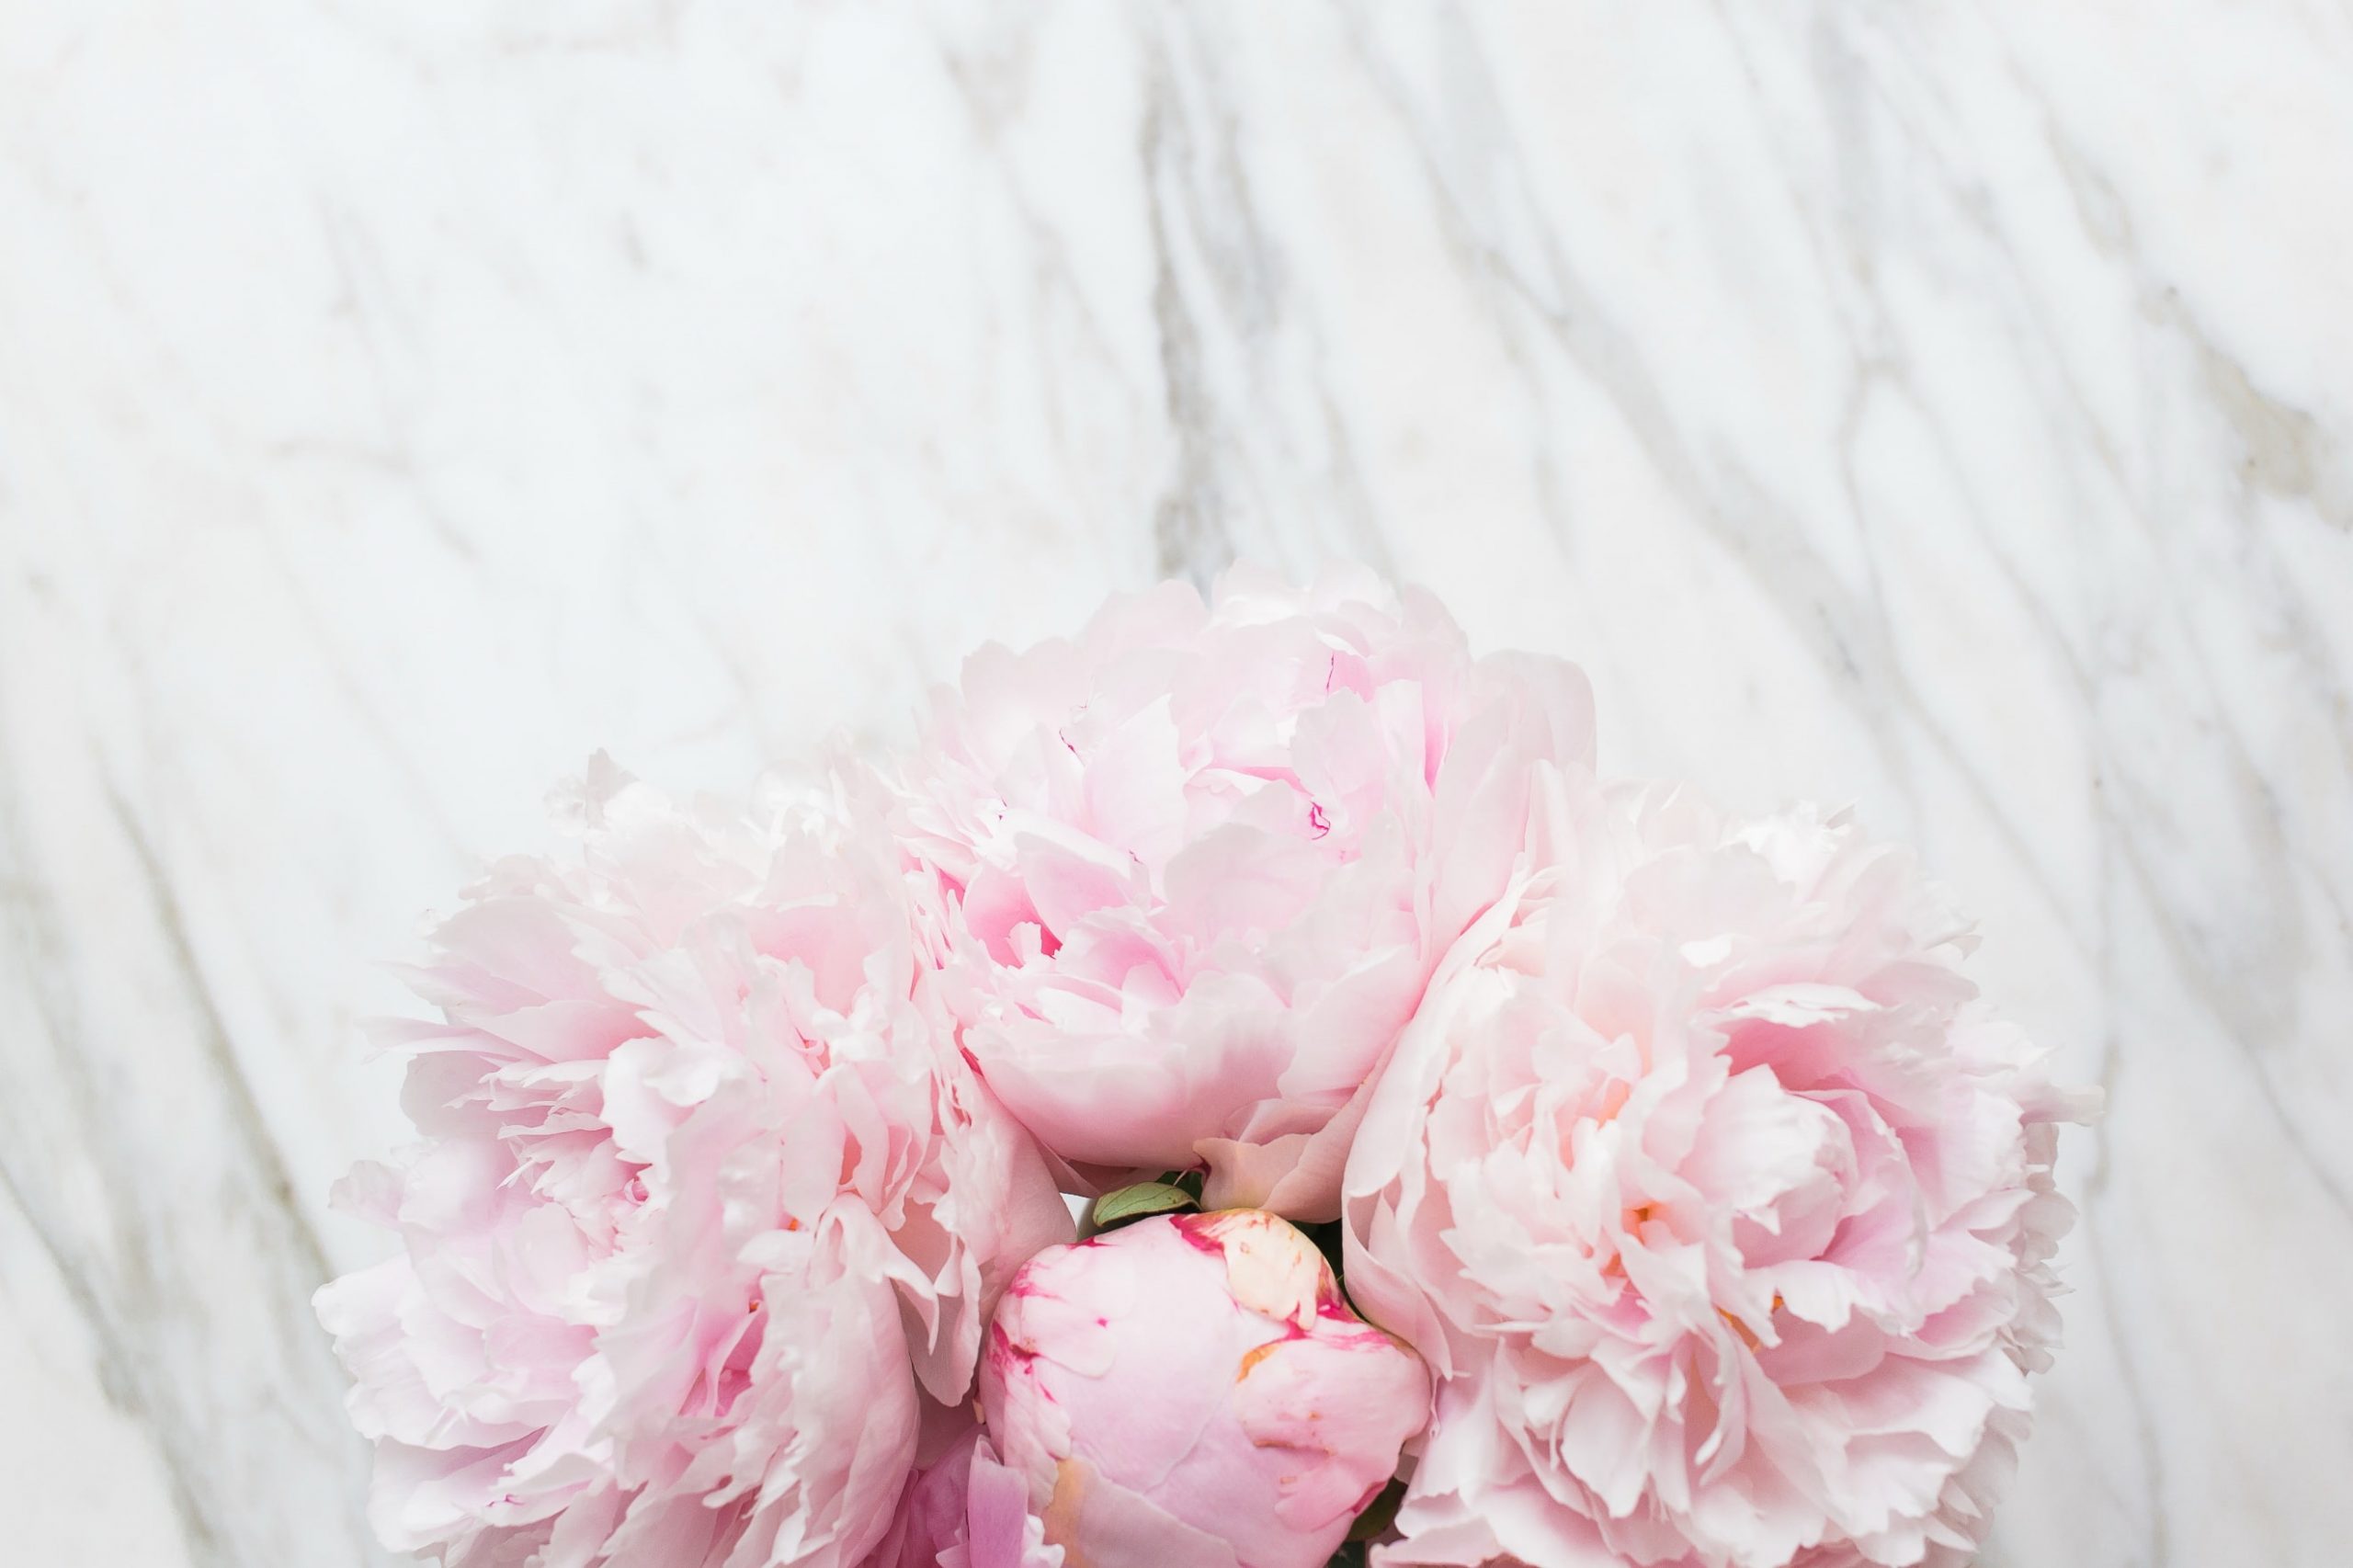 Flowers bouquet marble wallpaper pink peonies tender